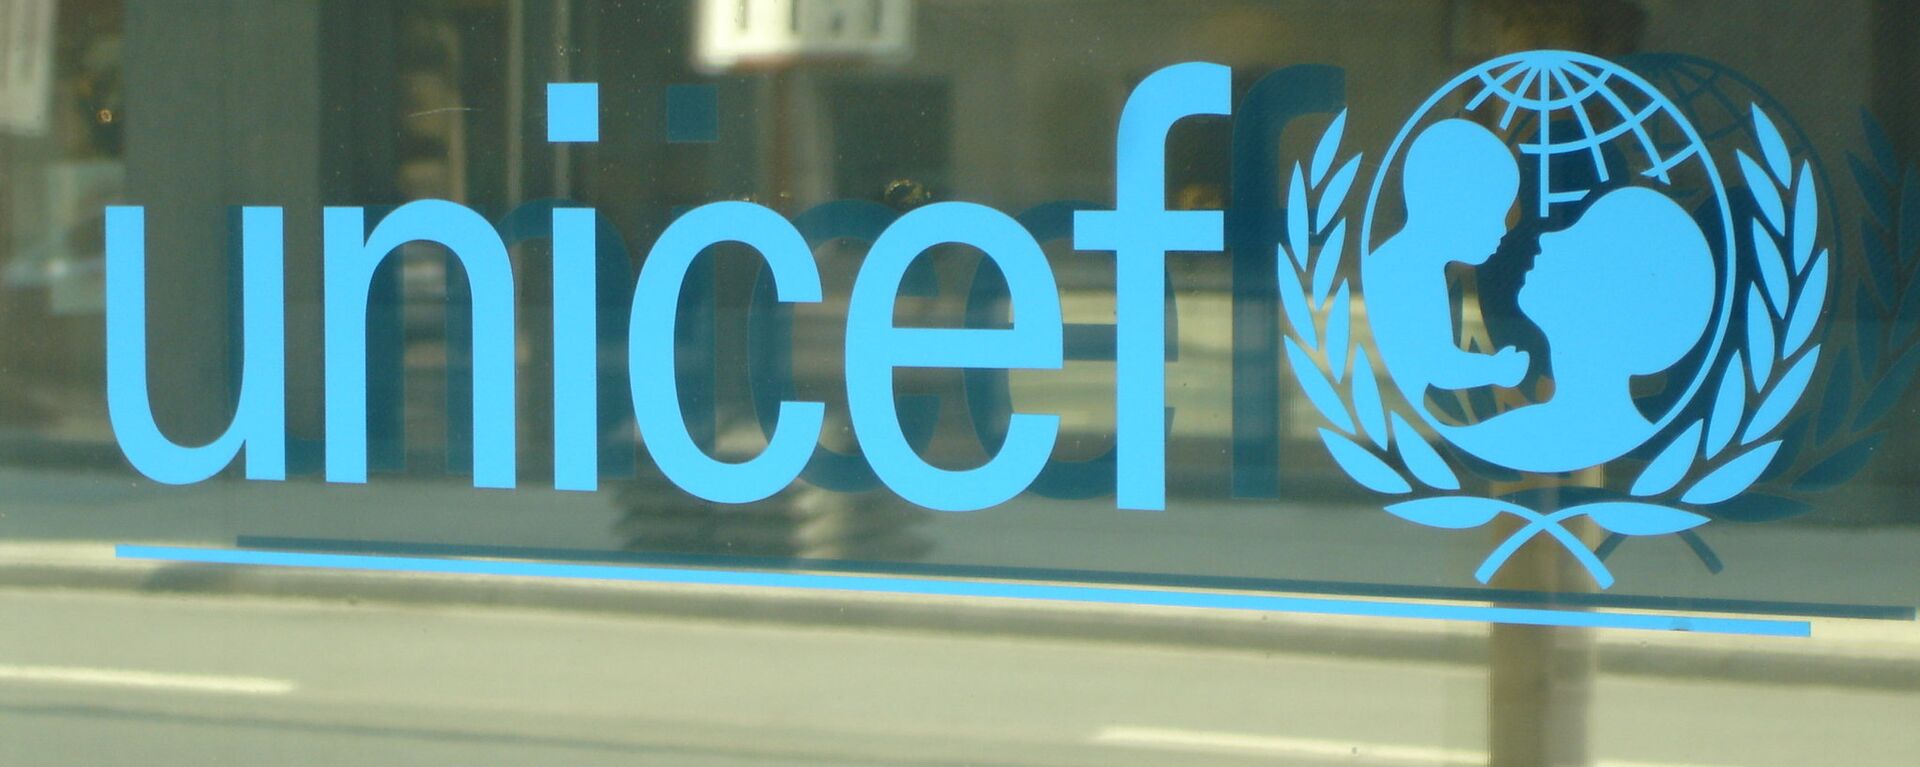 El logo de UNICEF - Sputnik Mundo, 1920, 17.02.2021